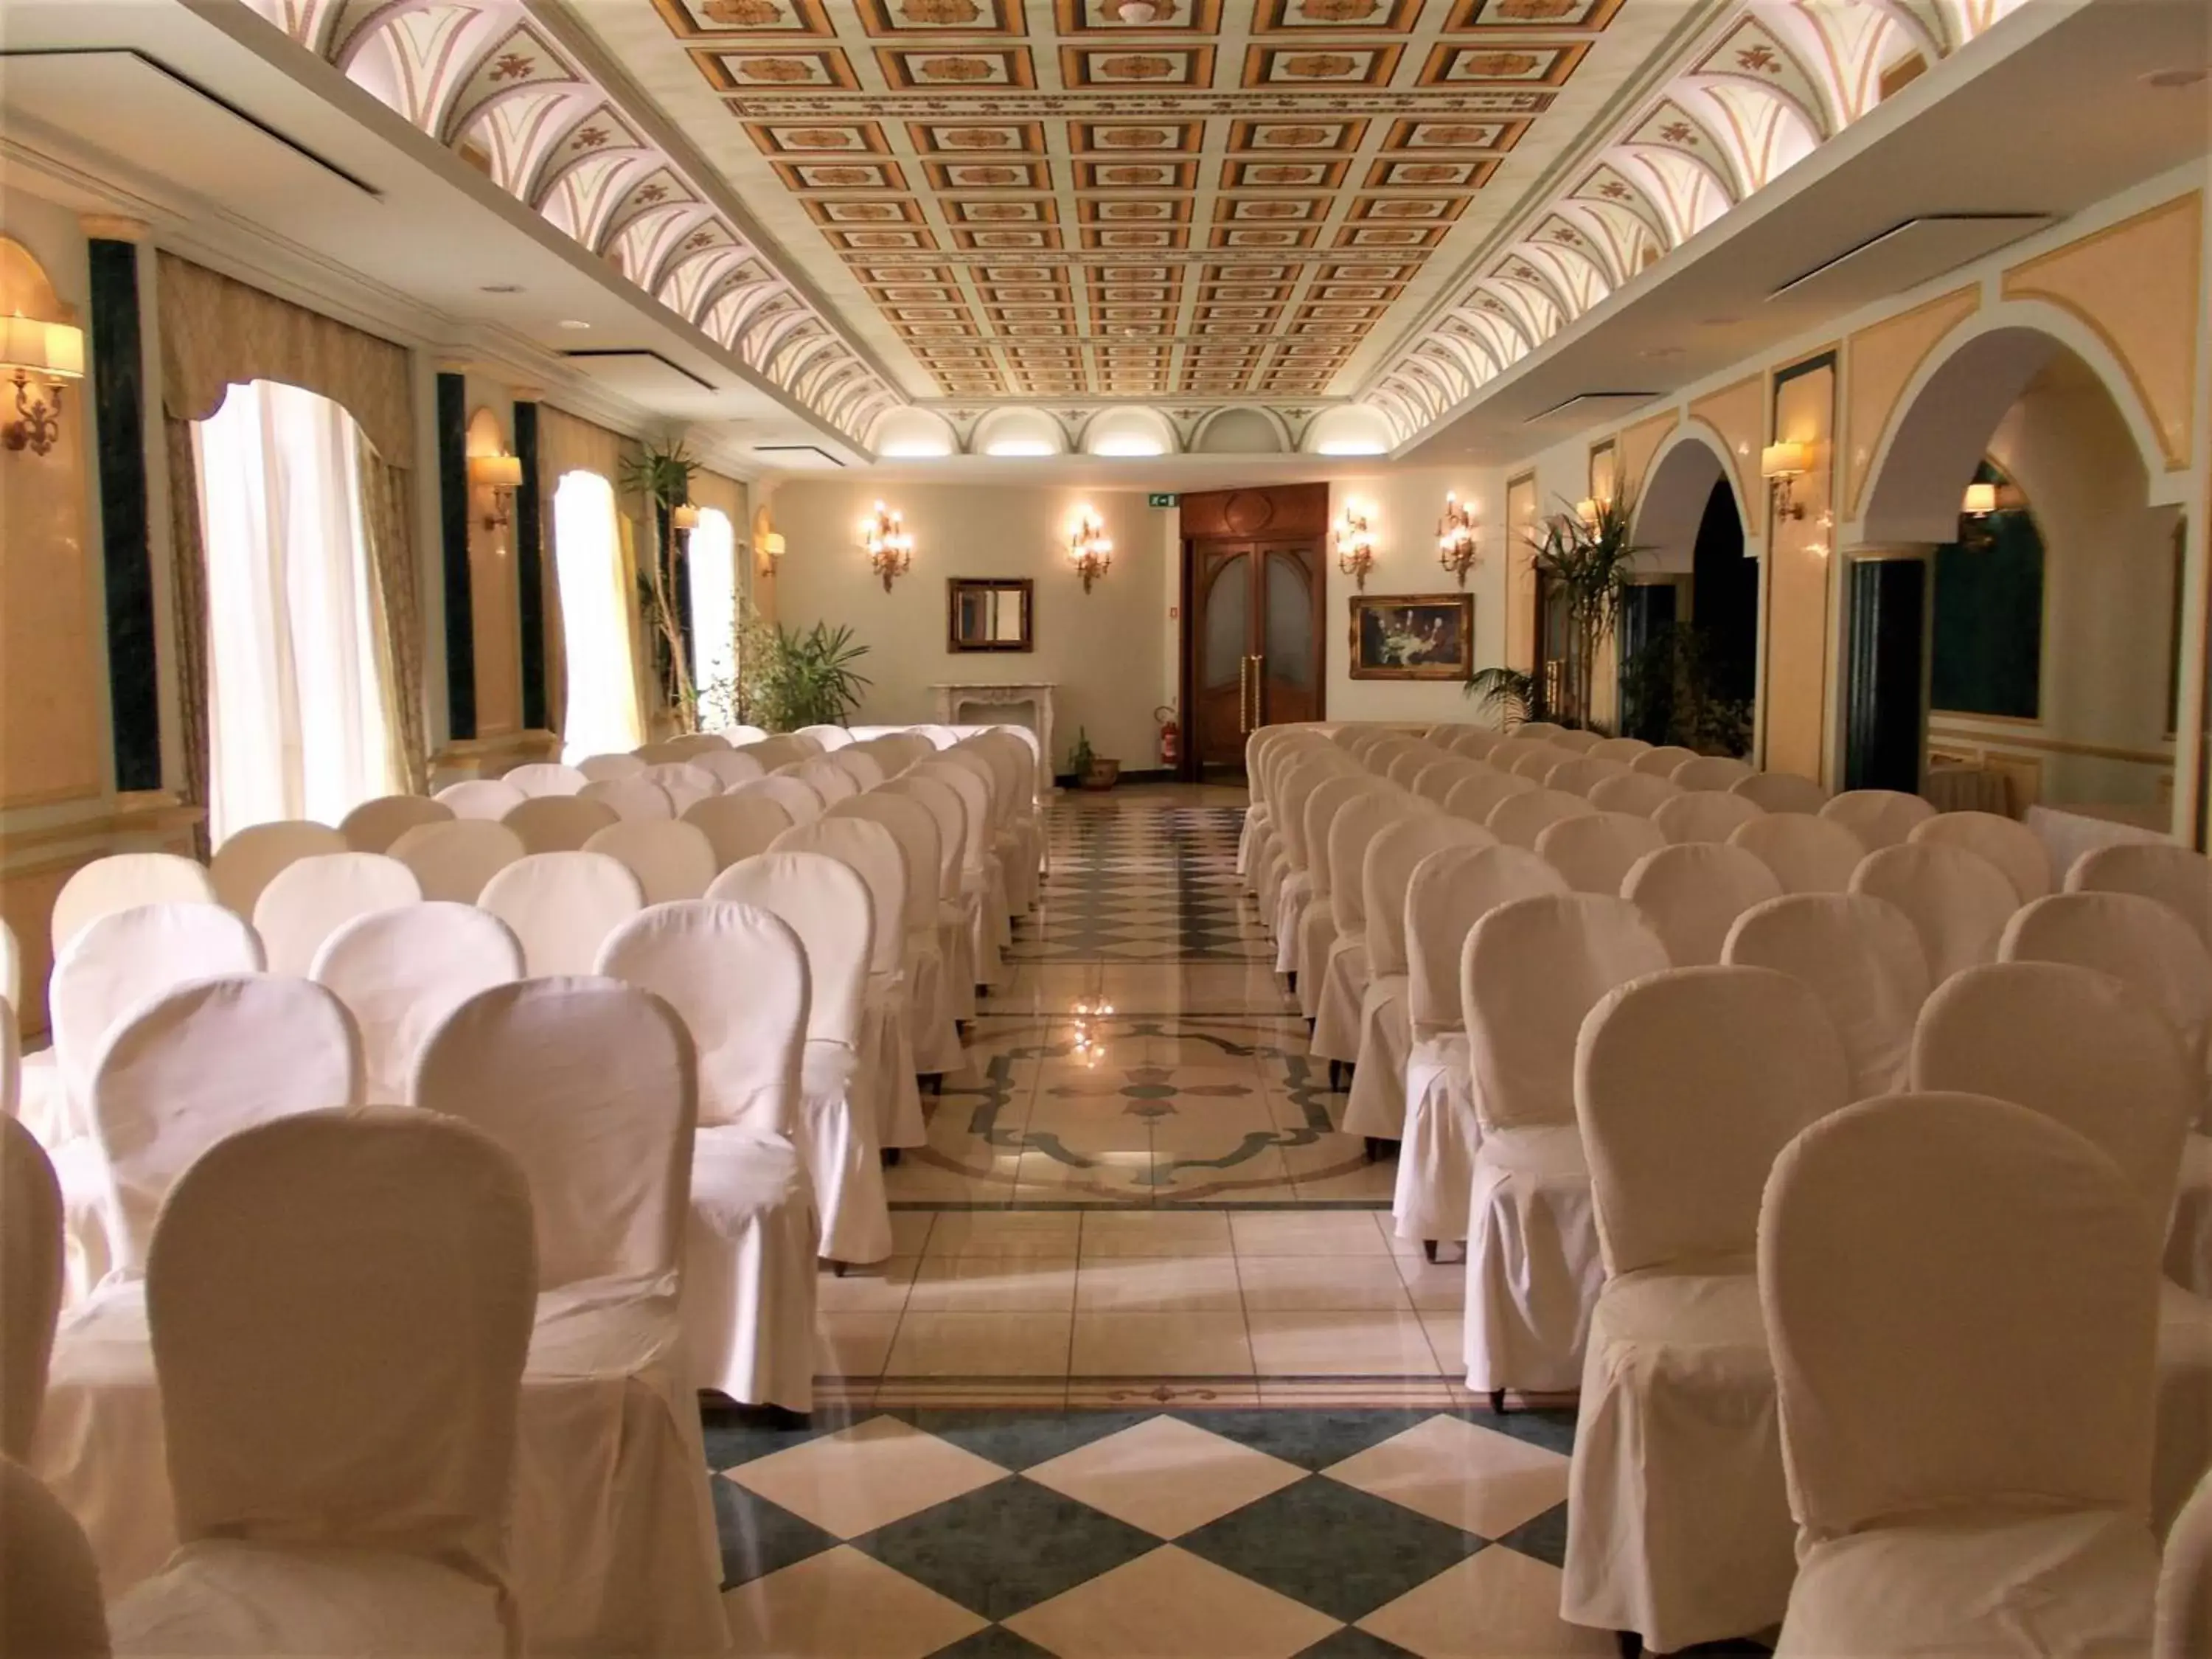 Banquet/Function facilities, Banquet Facilities in Parco dei Principi Hotel